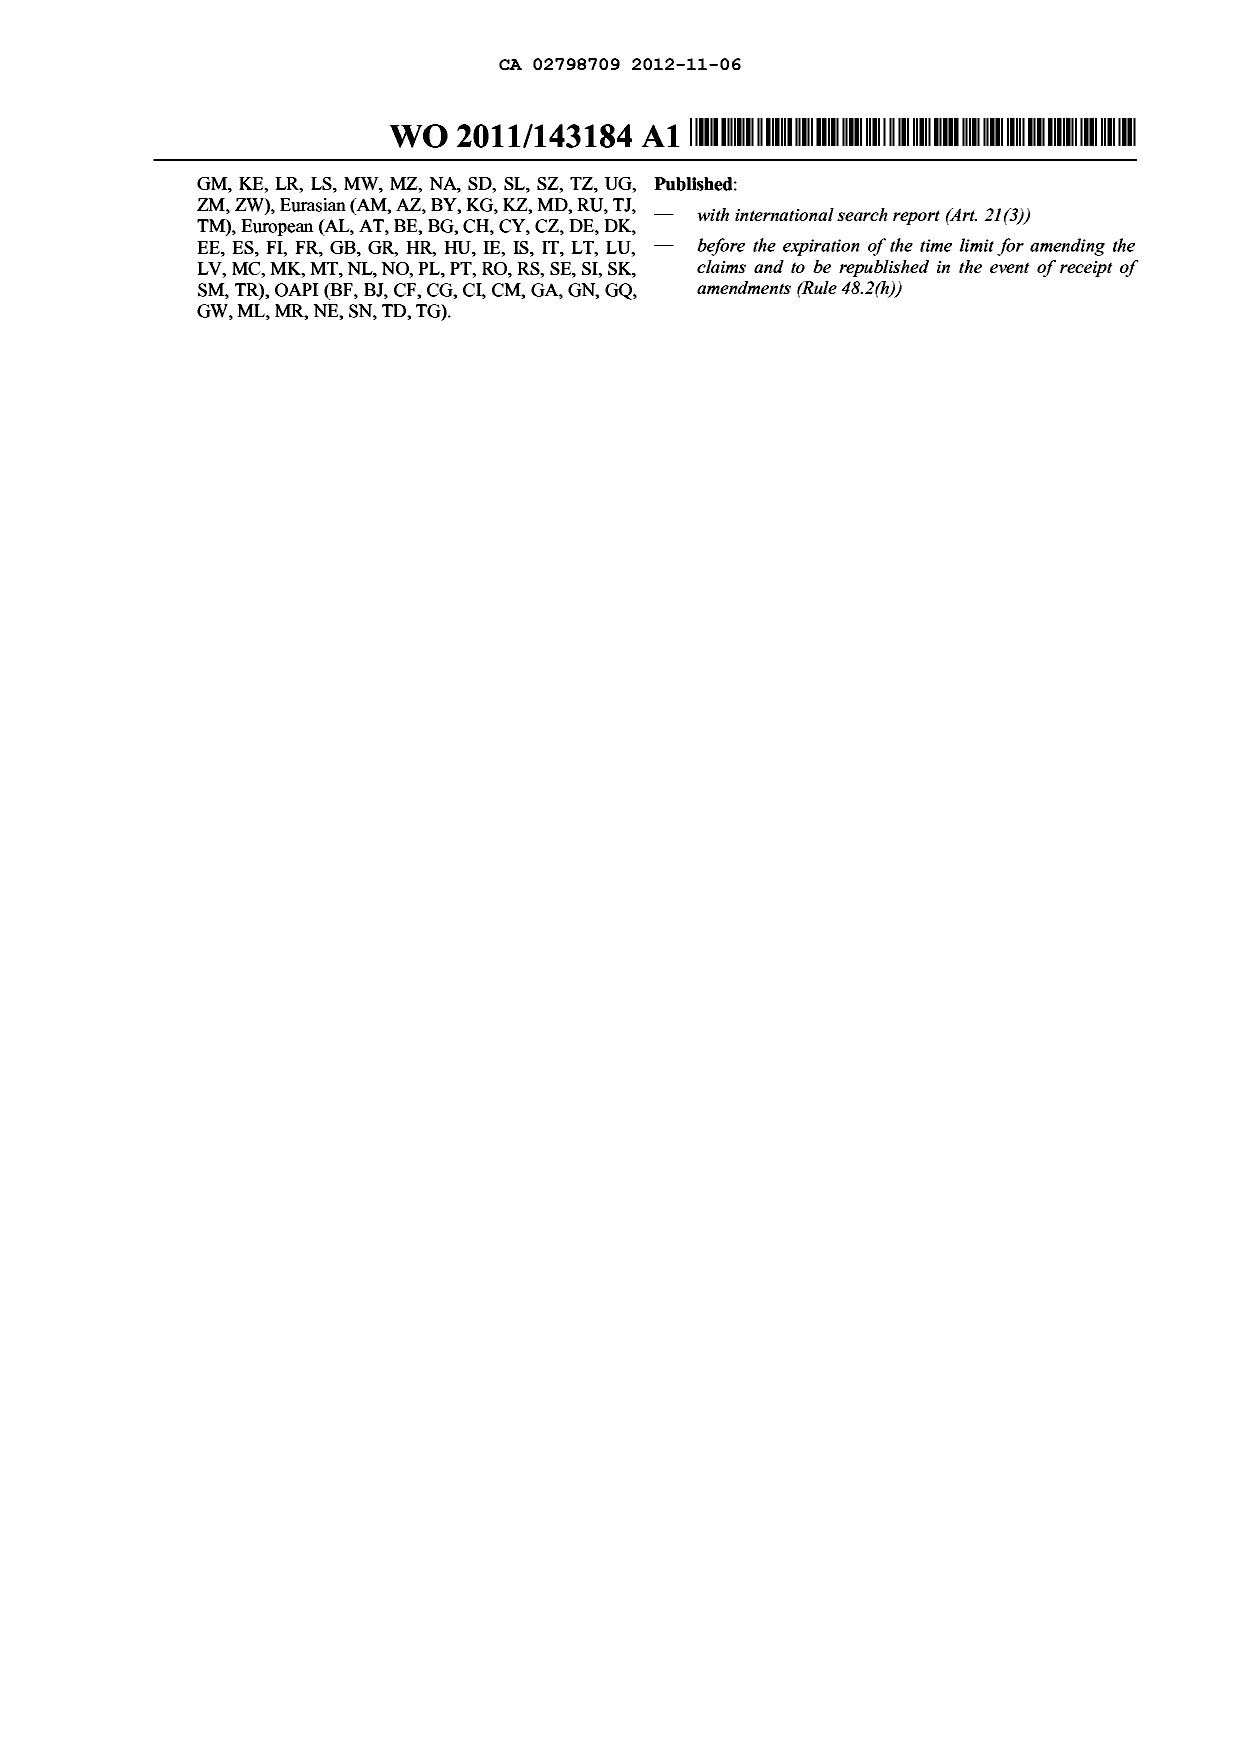 Document de brevet canadien 2798709. Abrégé 20121106. Image 2 de 2